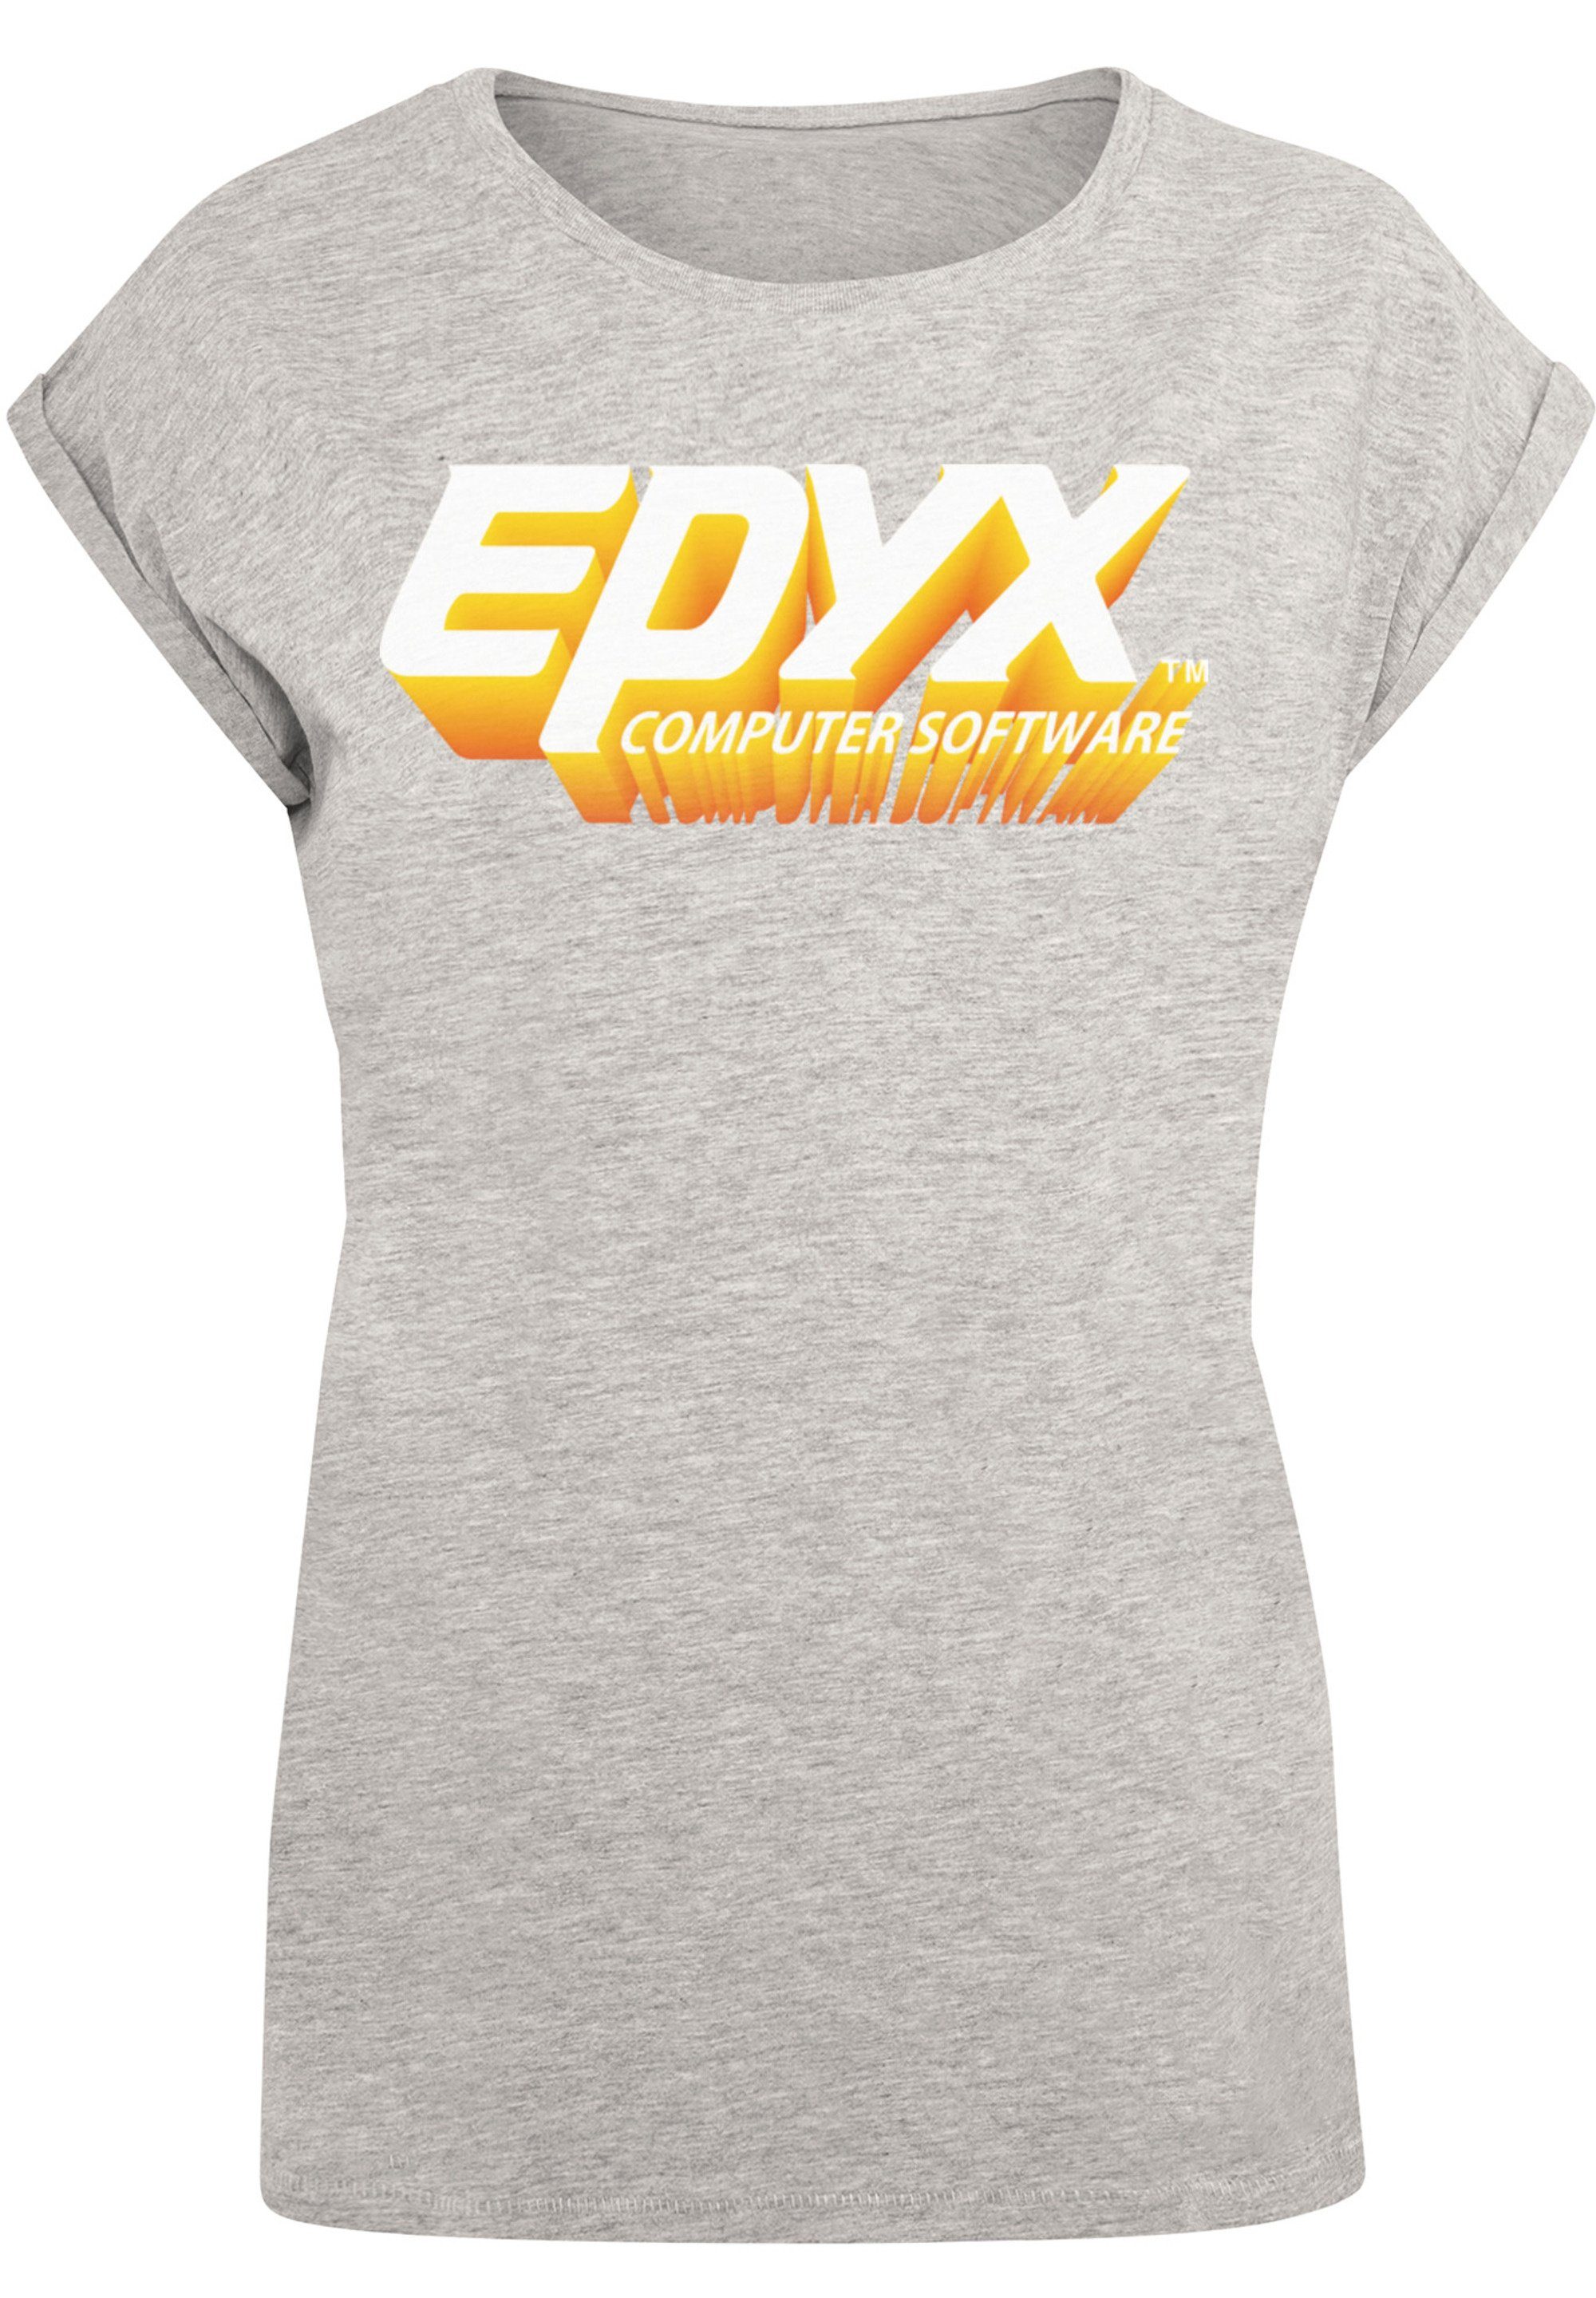 mit 3D hohem EPYX Logo Tragekomfort F4NT4STIC Baumwollstoff Print, Gaming weicher T-Shirt Retro Sehr